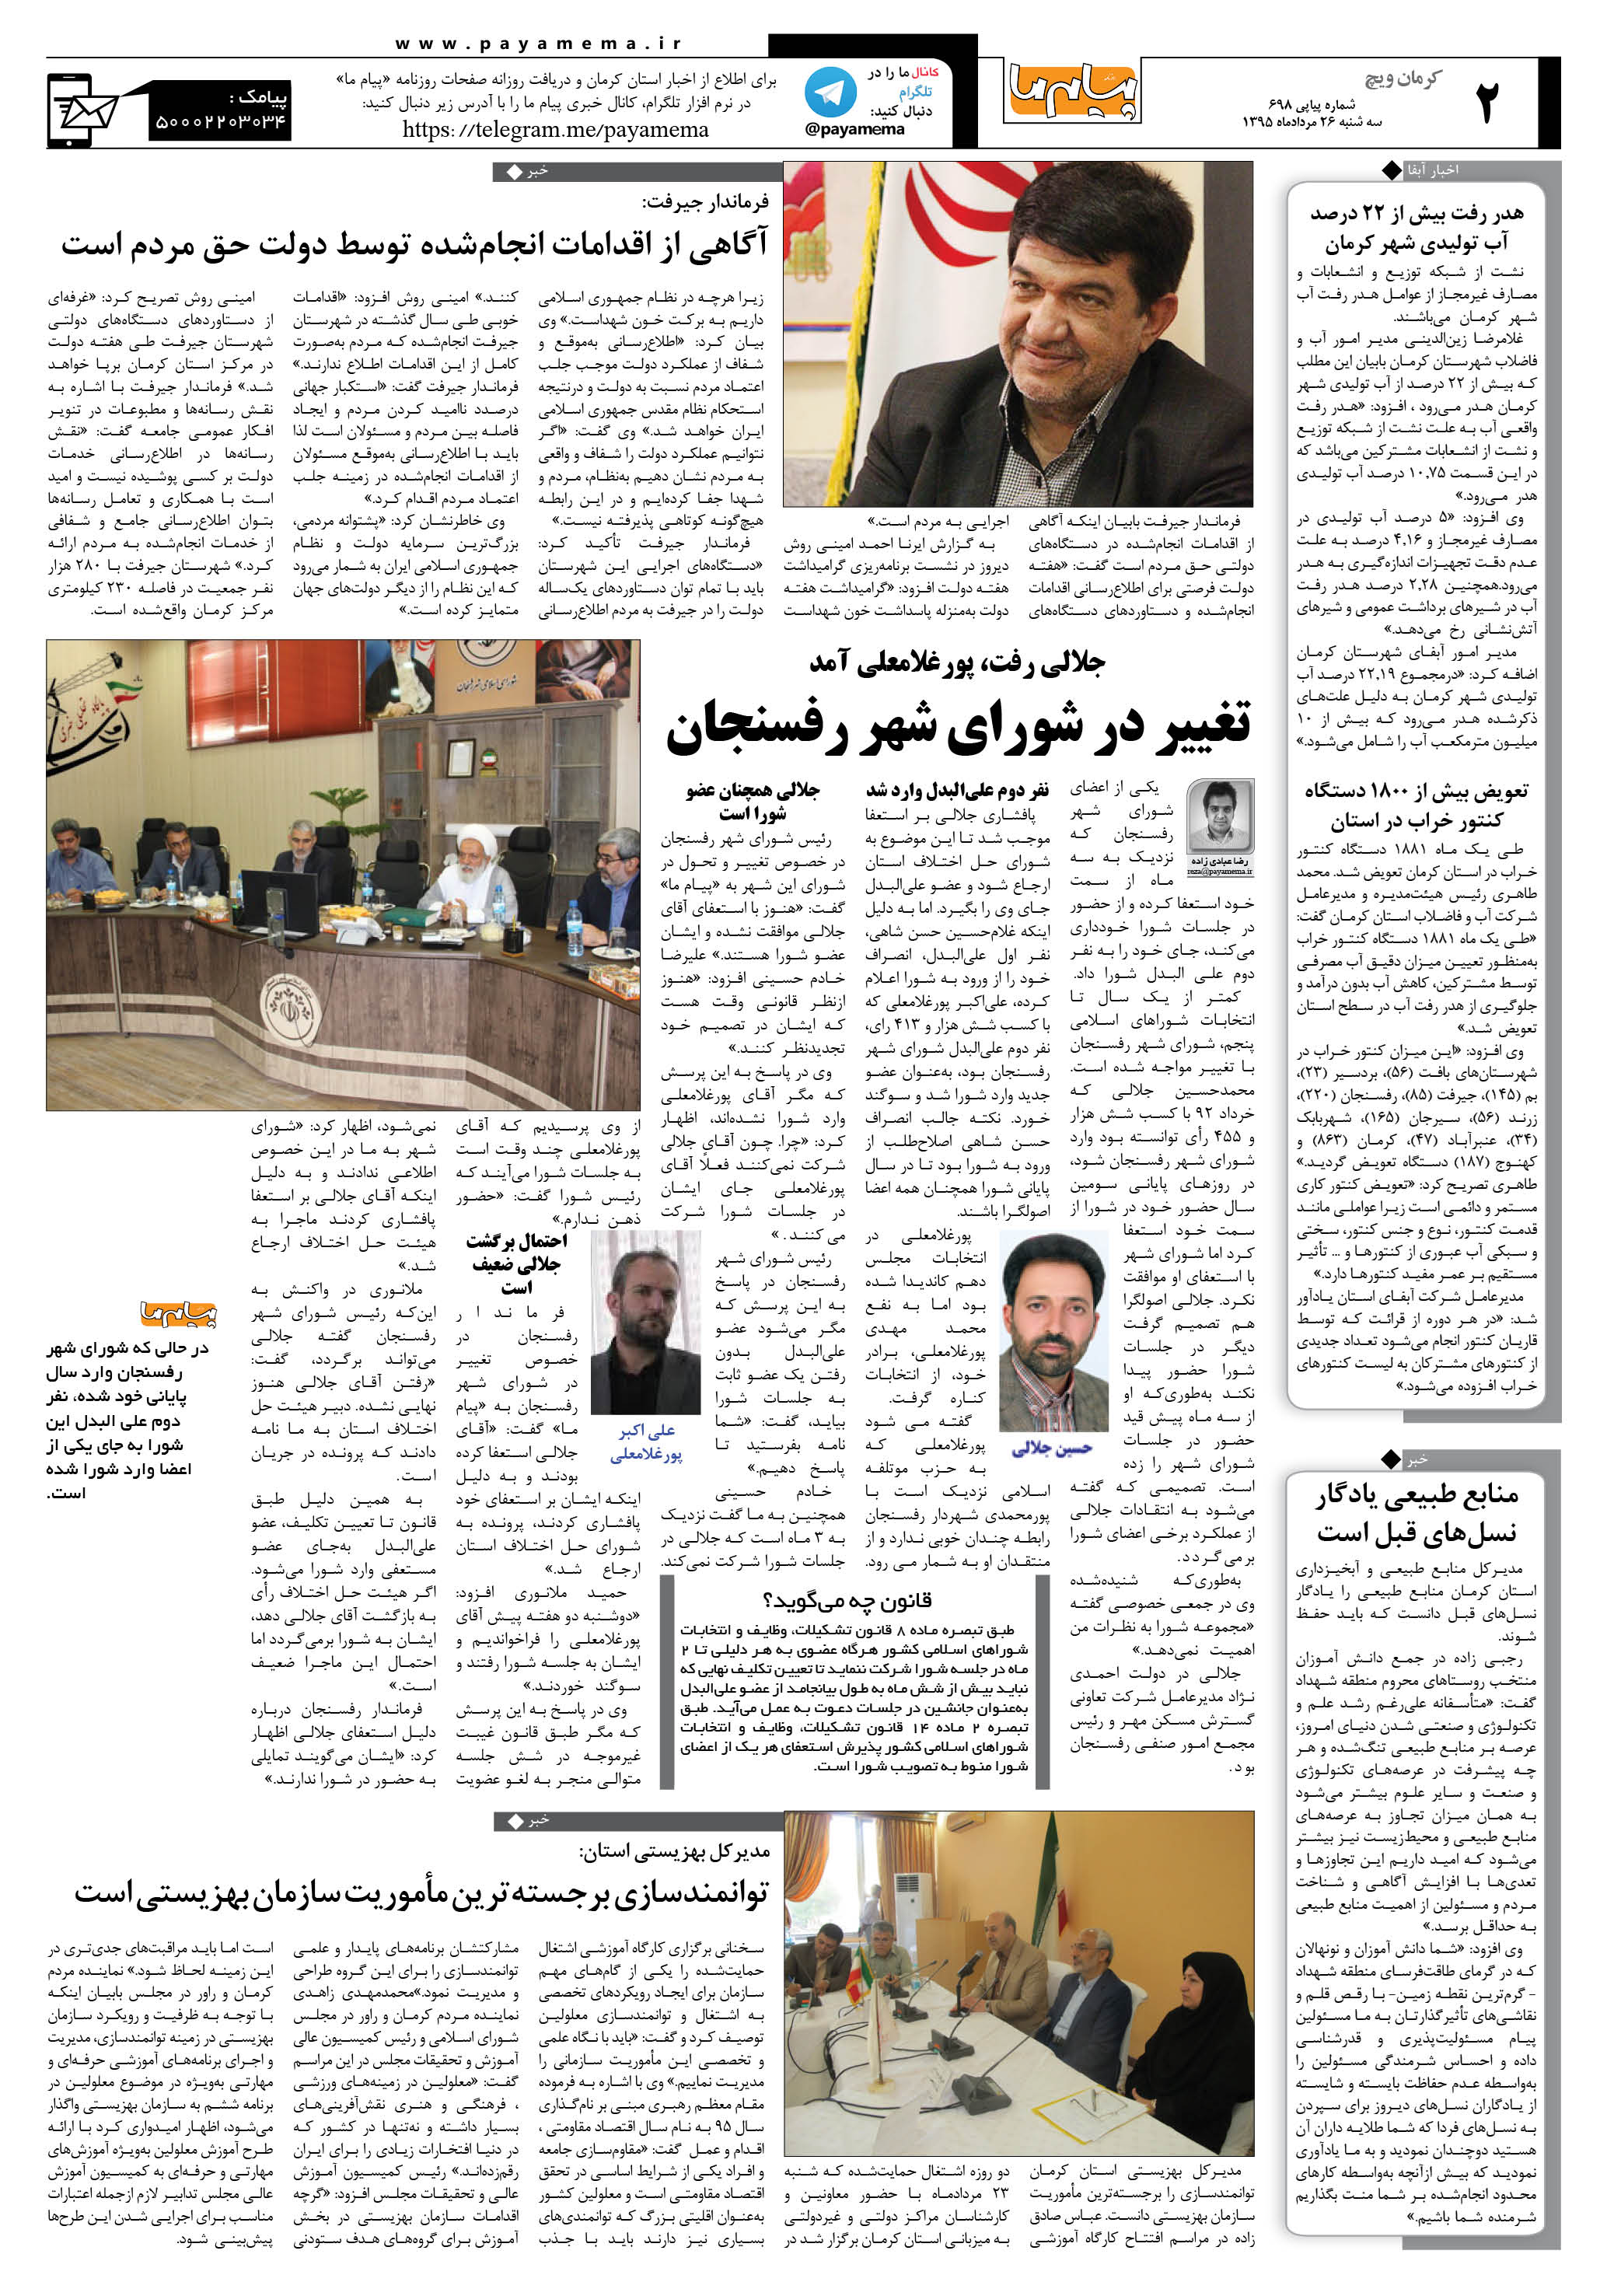 صفحه کرمان ویج شماره 698 روزنامه پیام ما